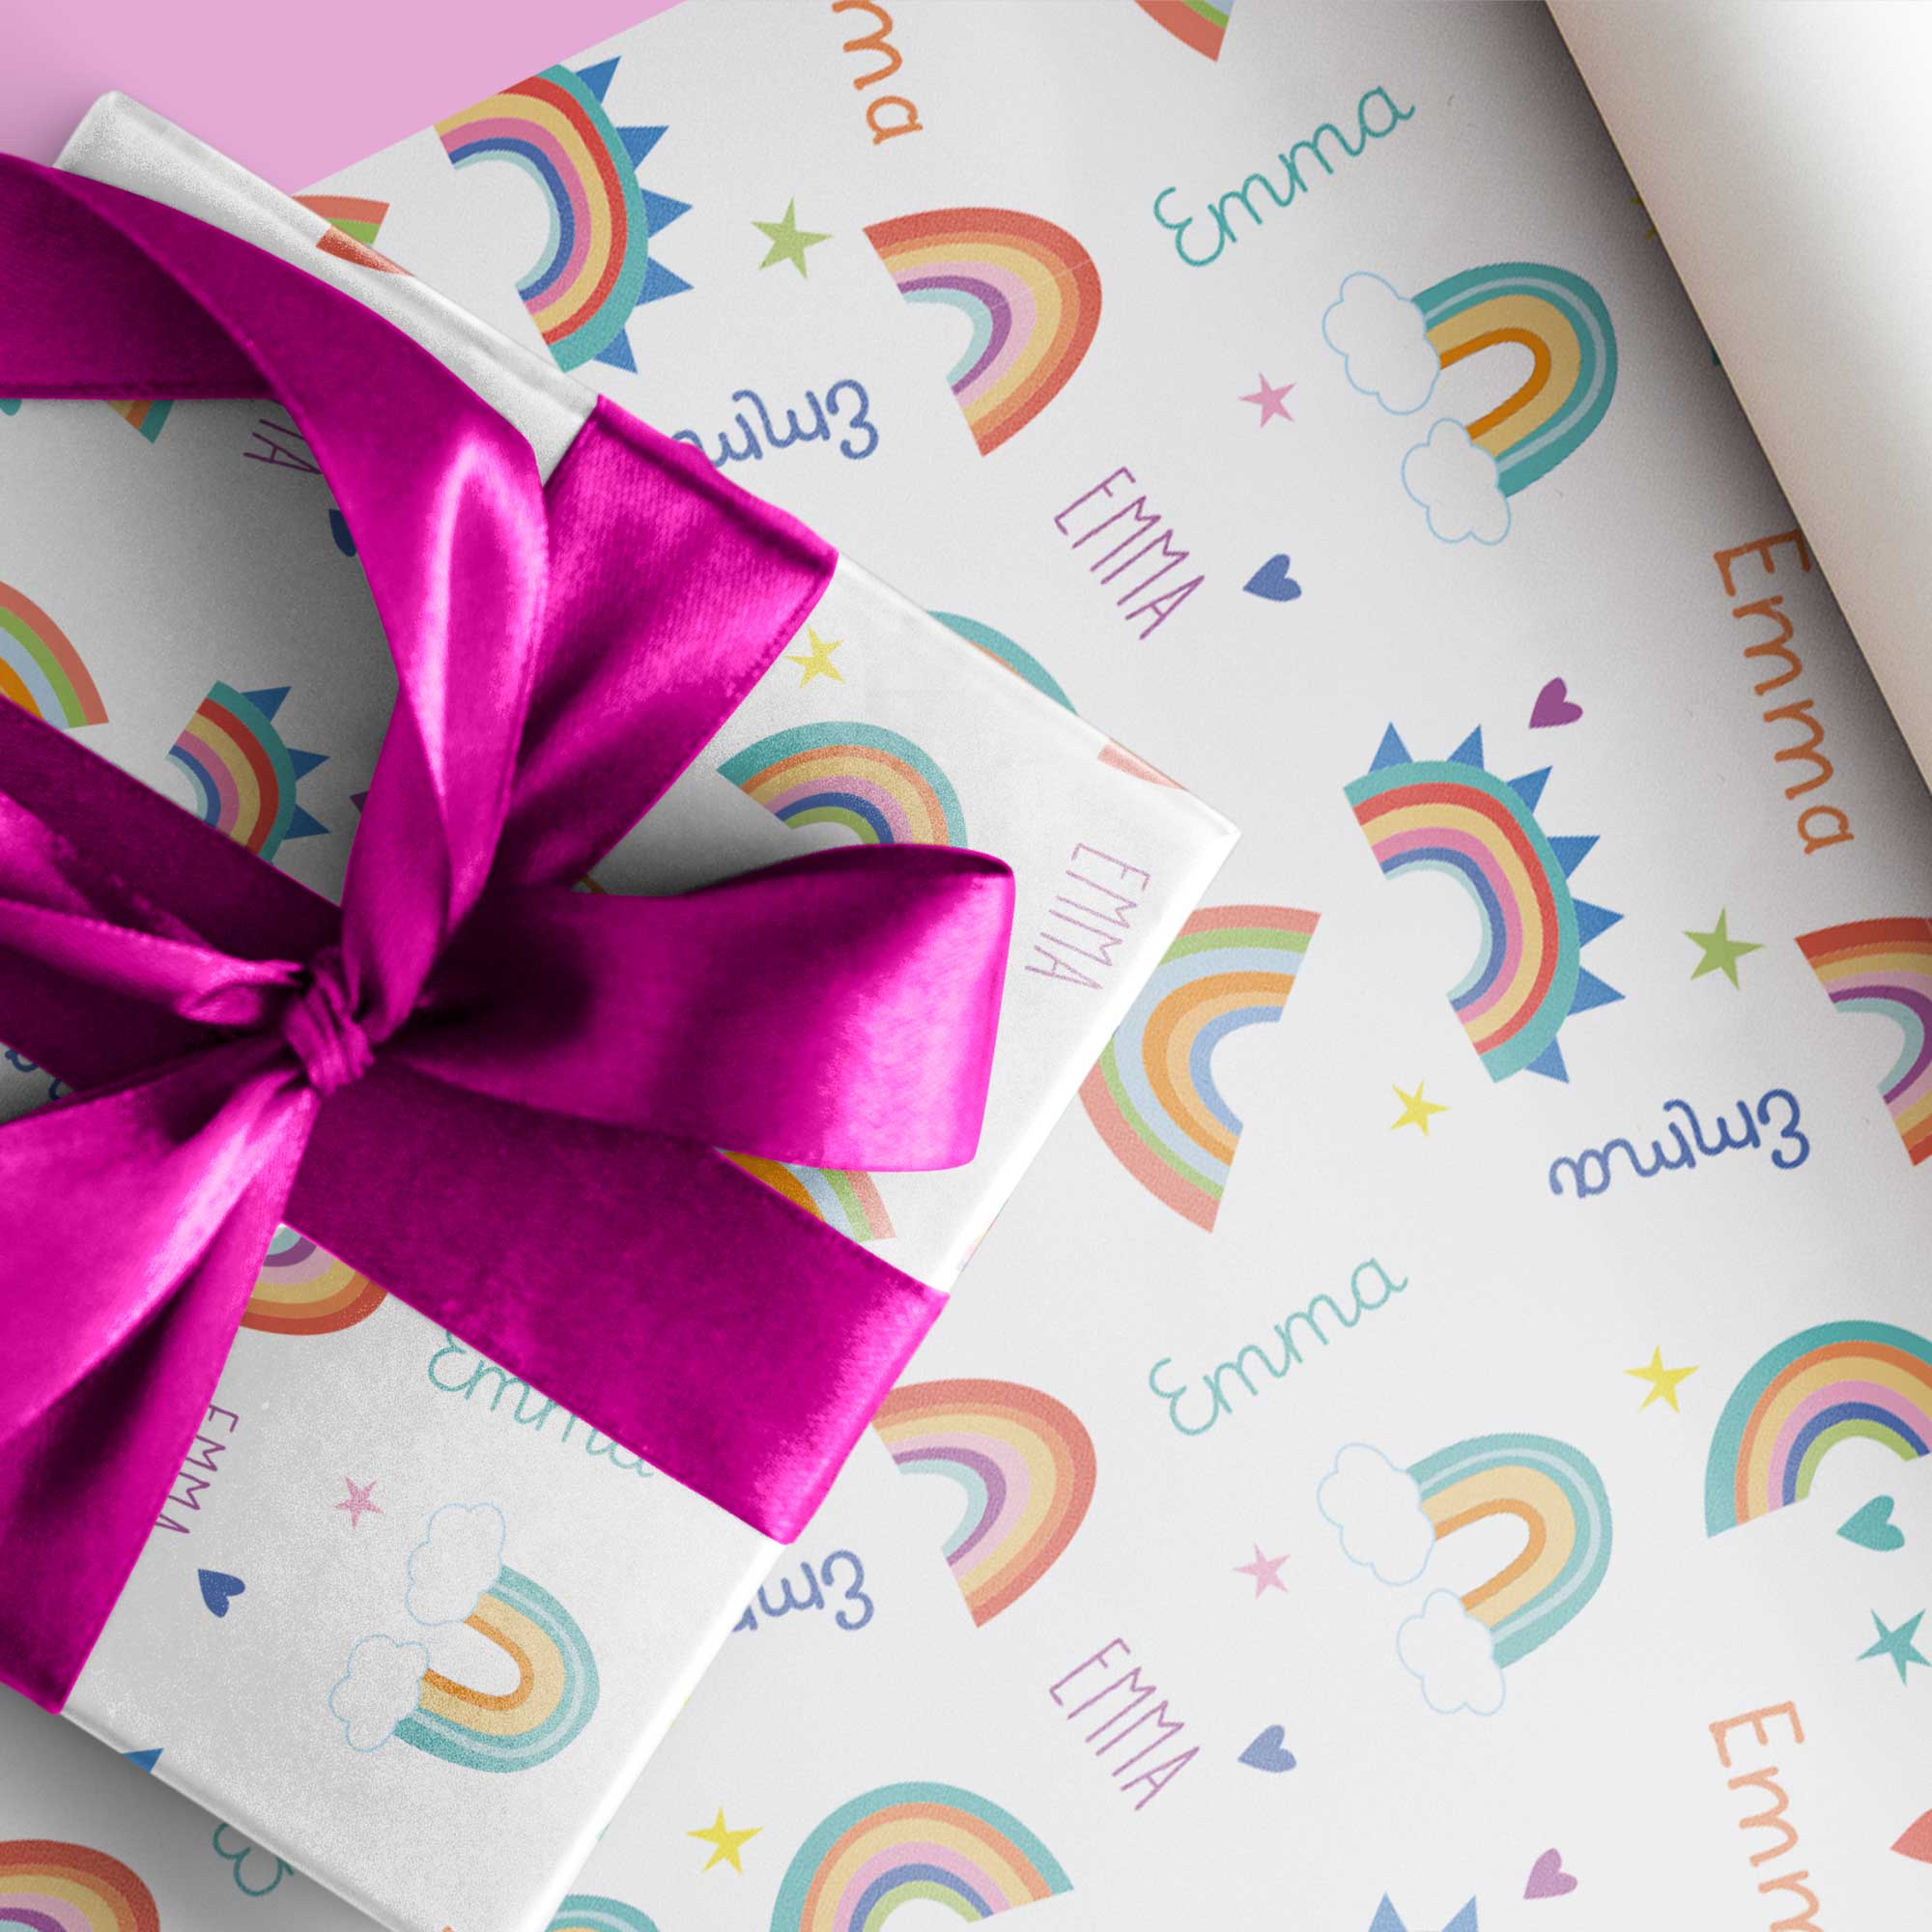 Personalisierbares Geschenkpapier Kindergeburtstag *Name + Alter *Regenbogen